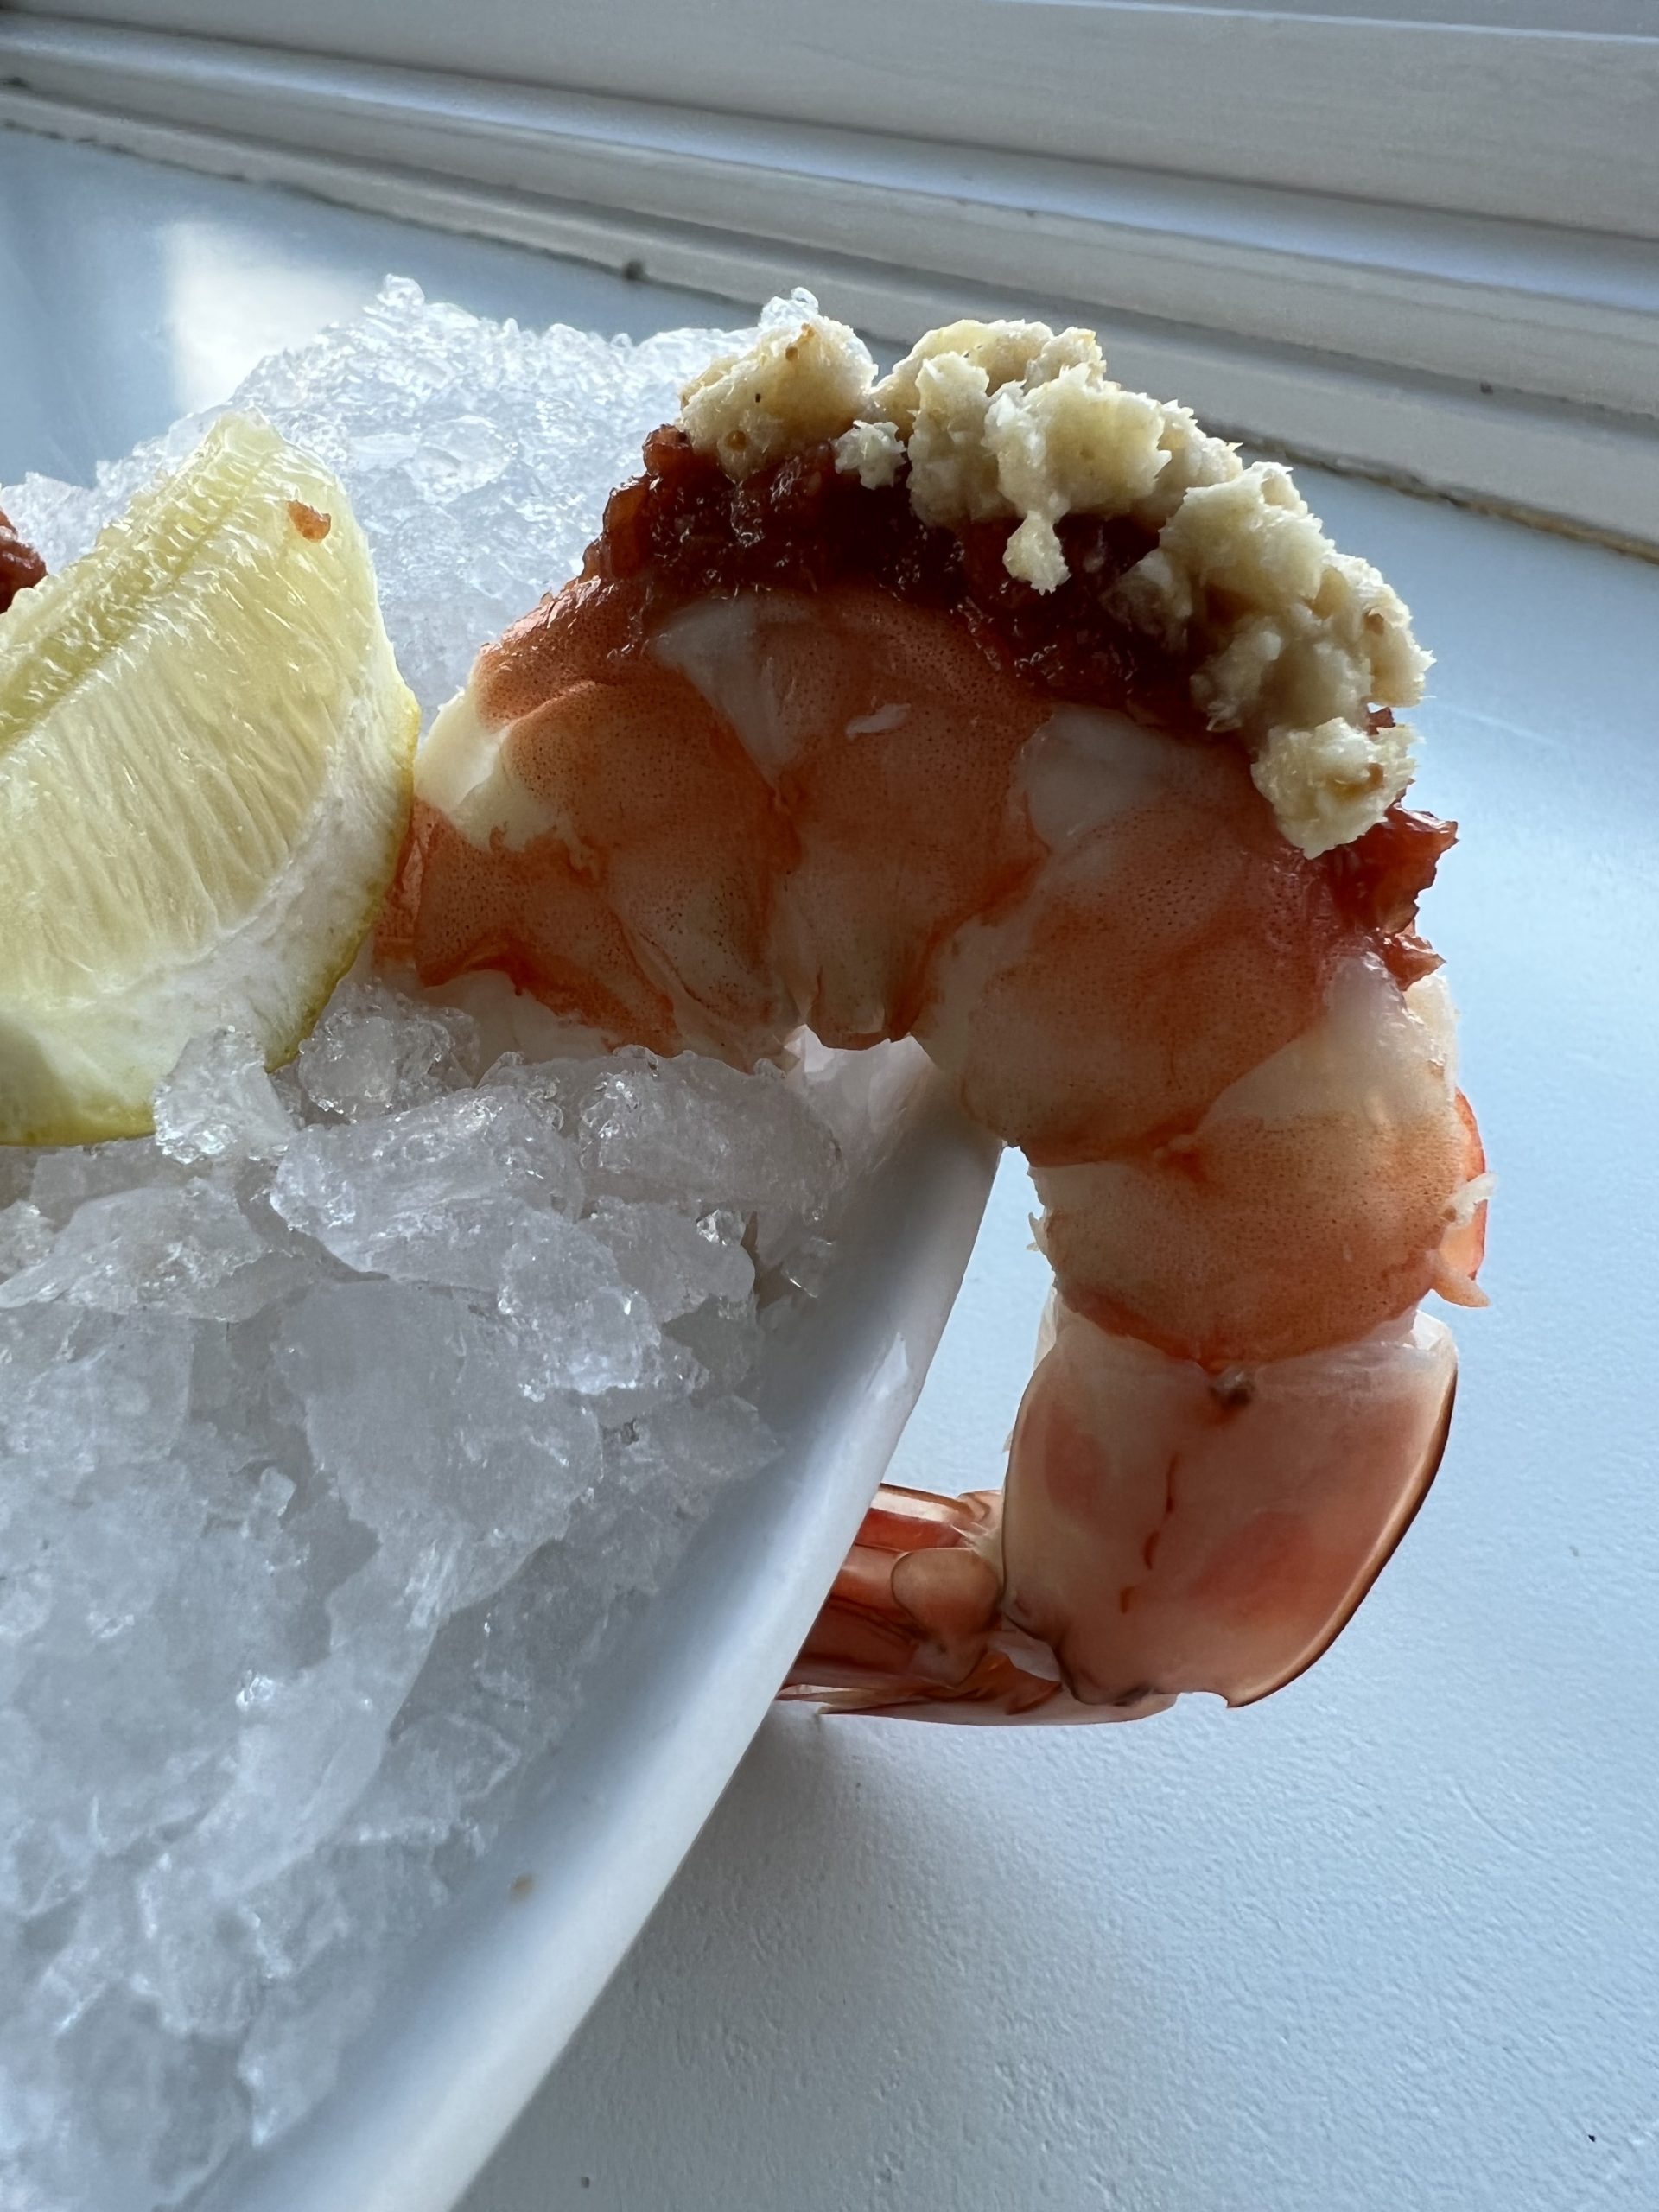 Shrimp cocktail at Manna at Lobster Inn.